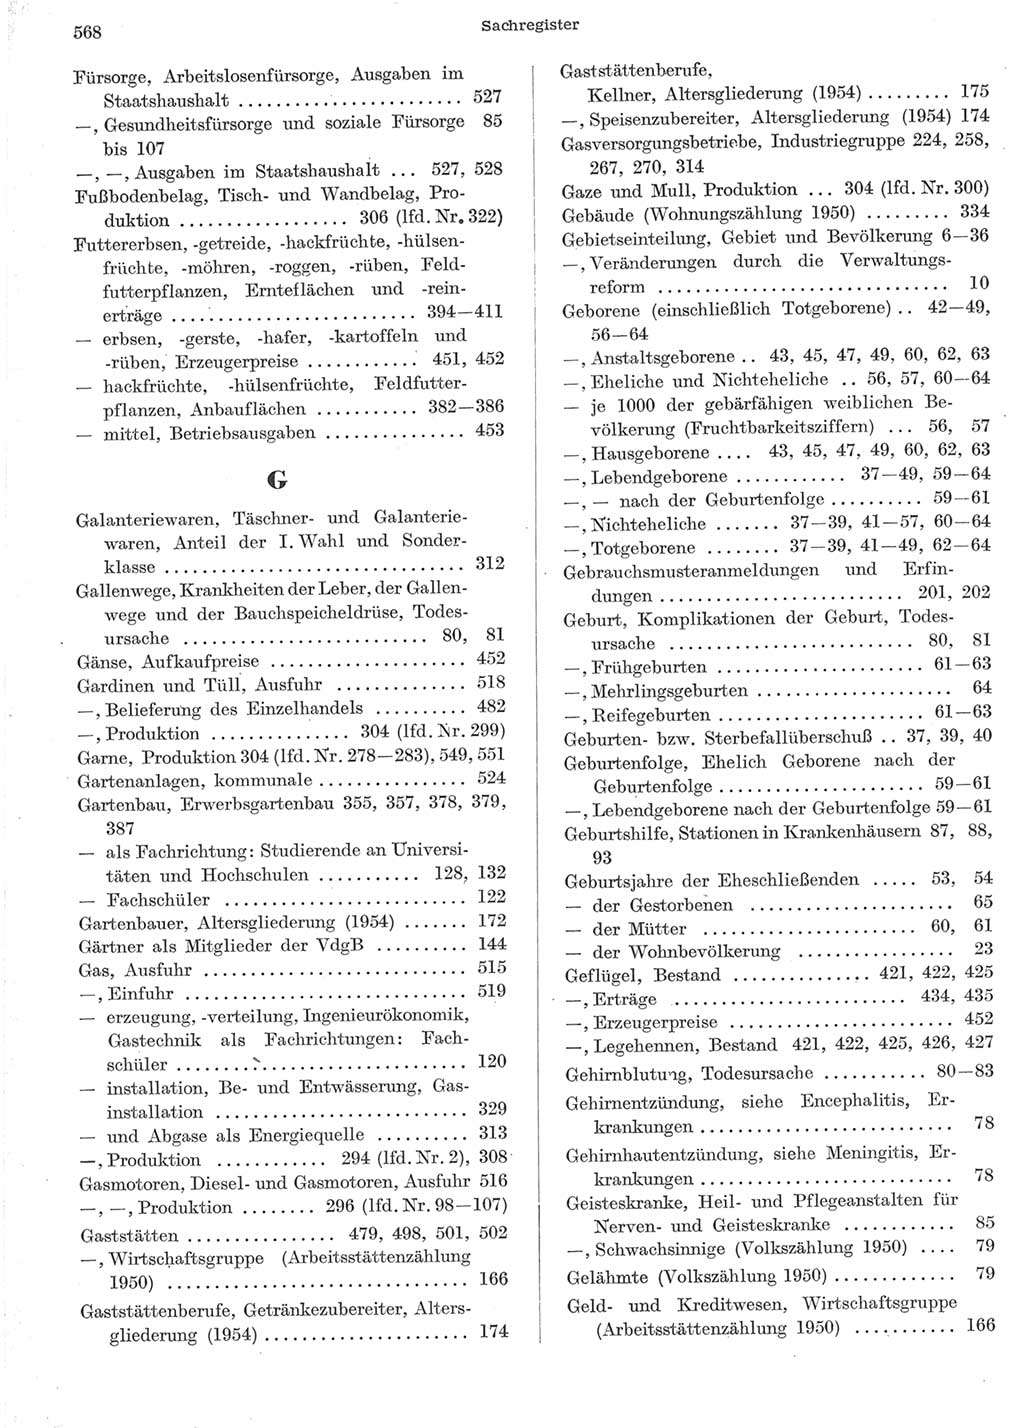 Statistisches Jahrbuch der Deutschen Demokratischen Republik (DDR) 1957, Seite 568 (Stat. Jb. DDR 1957, S. 568)